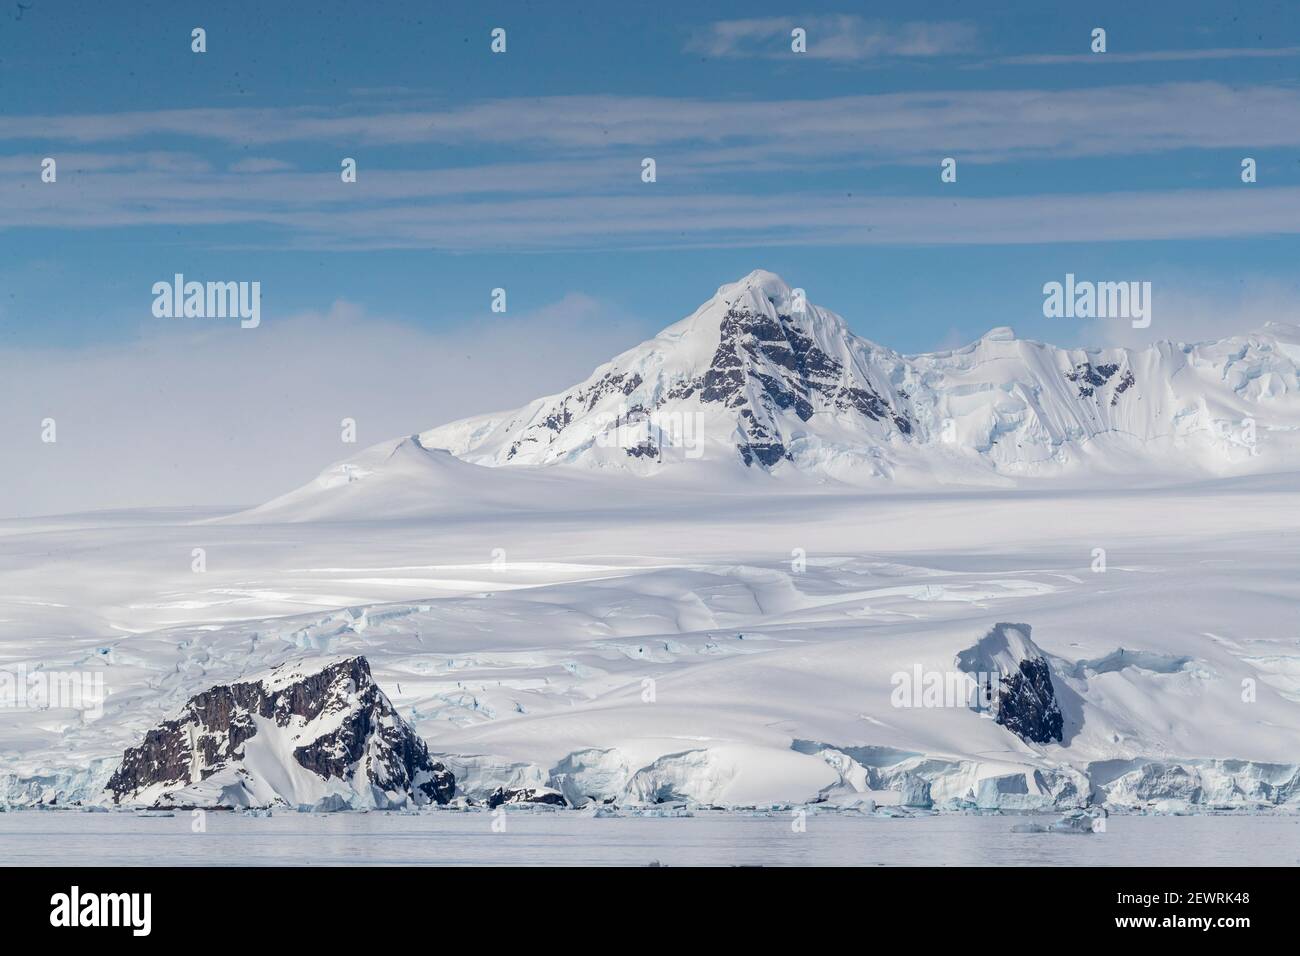 Montagnes enneigées et glaciers en eau tidwater dans le port de Mikkelsen, l'île Trinity, l'Antarctique, les régions polaires Banque D'Images